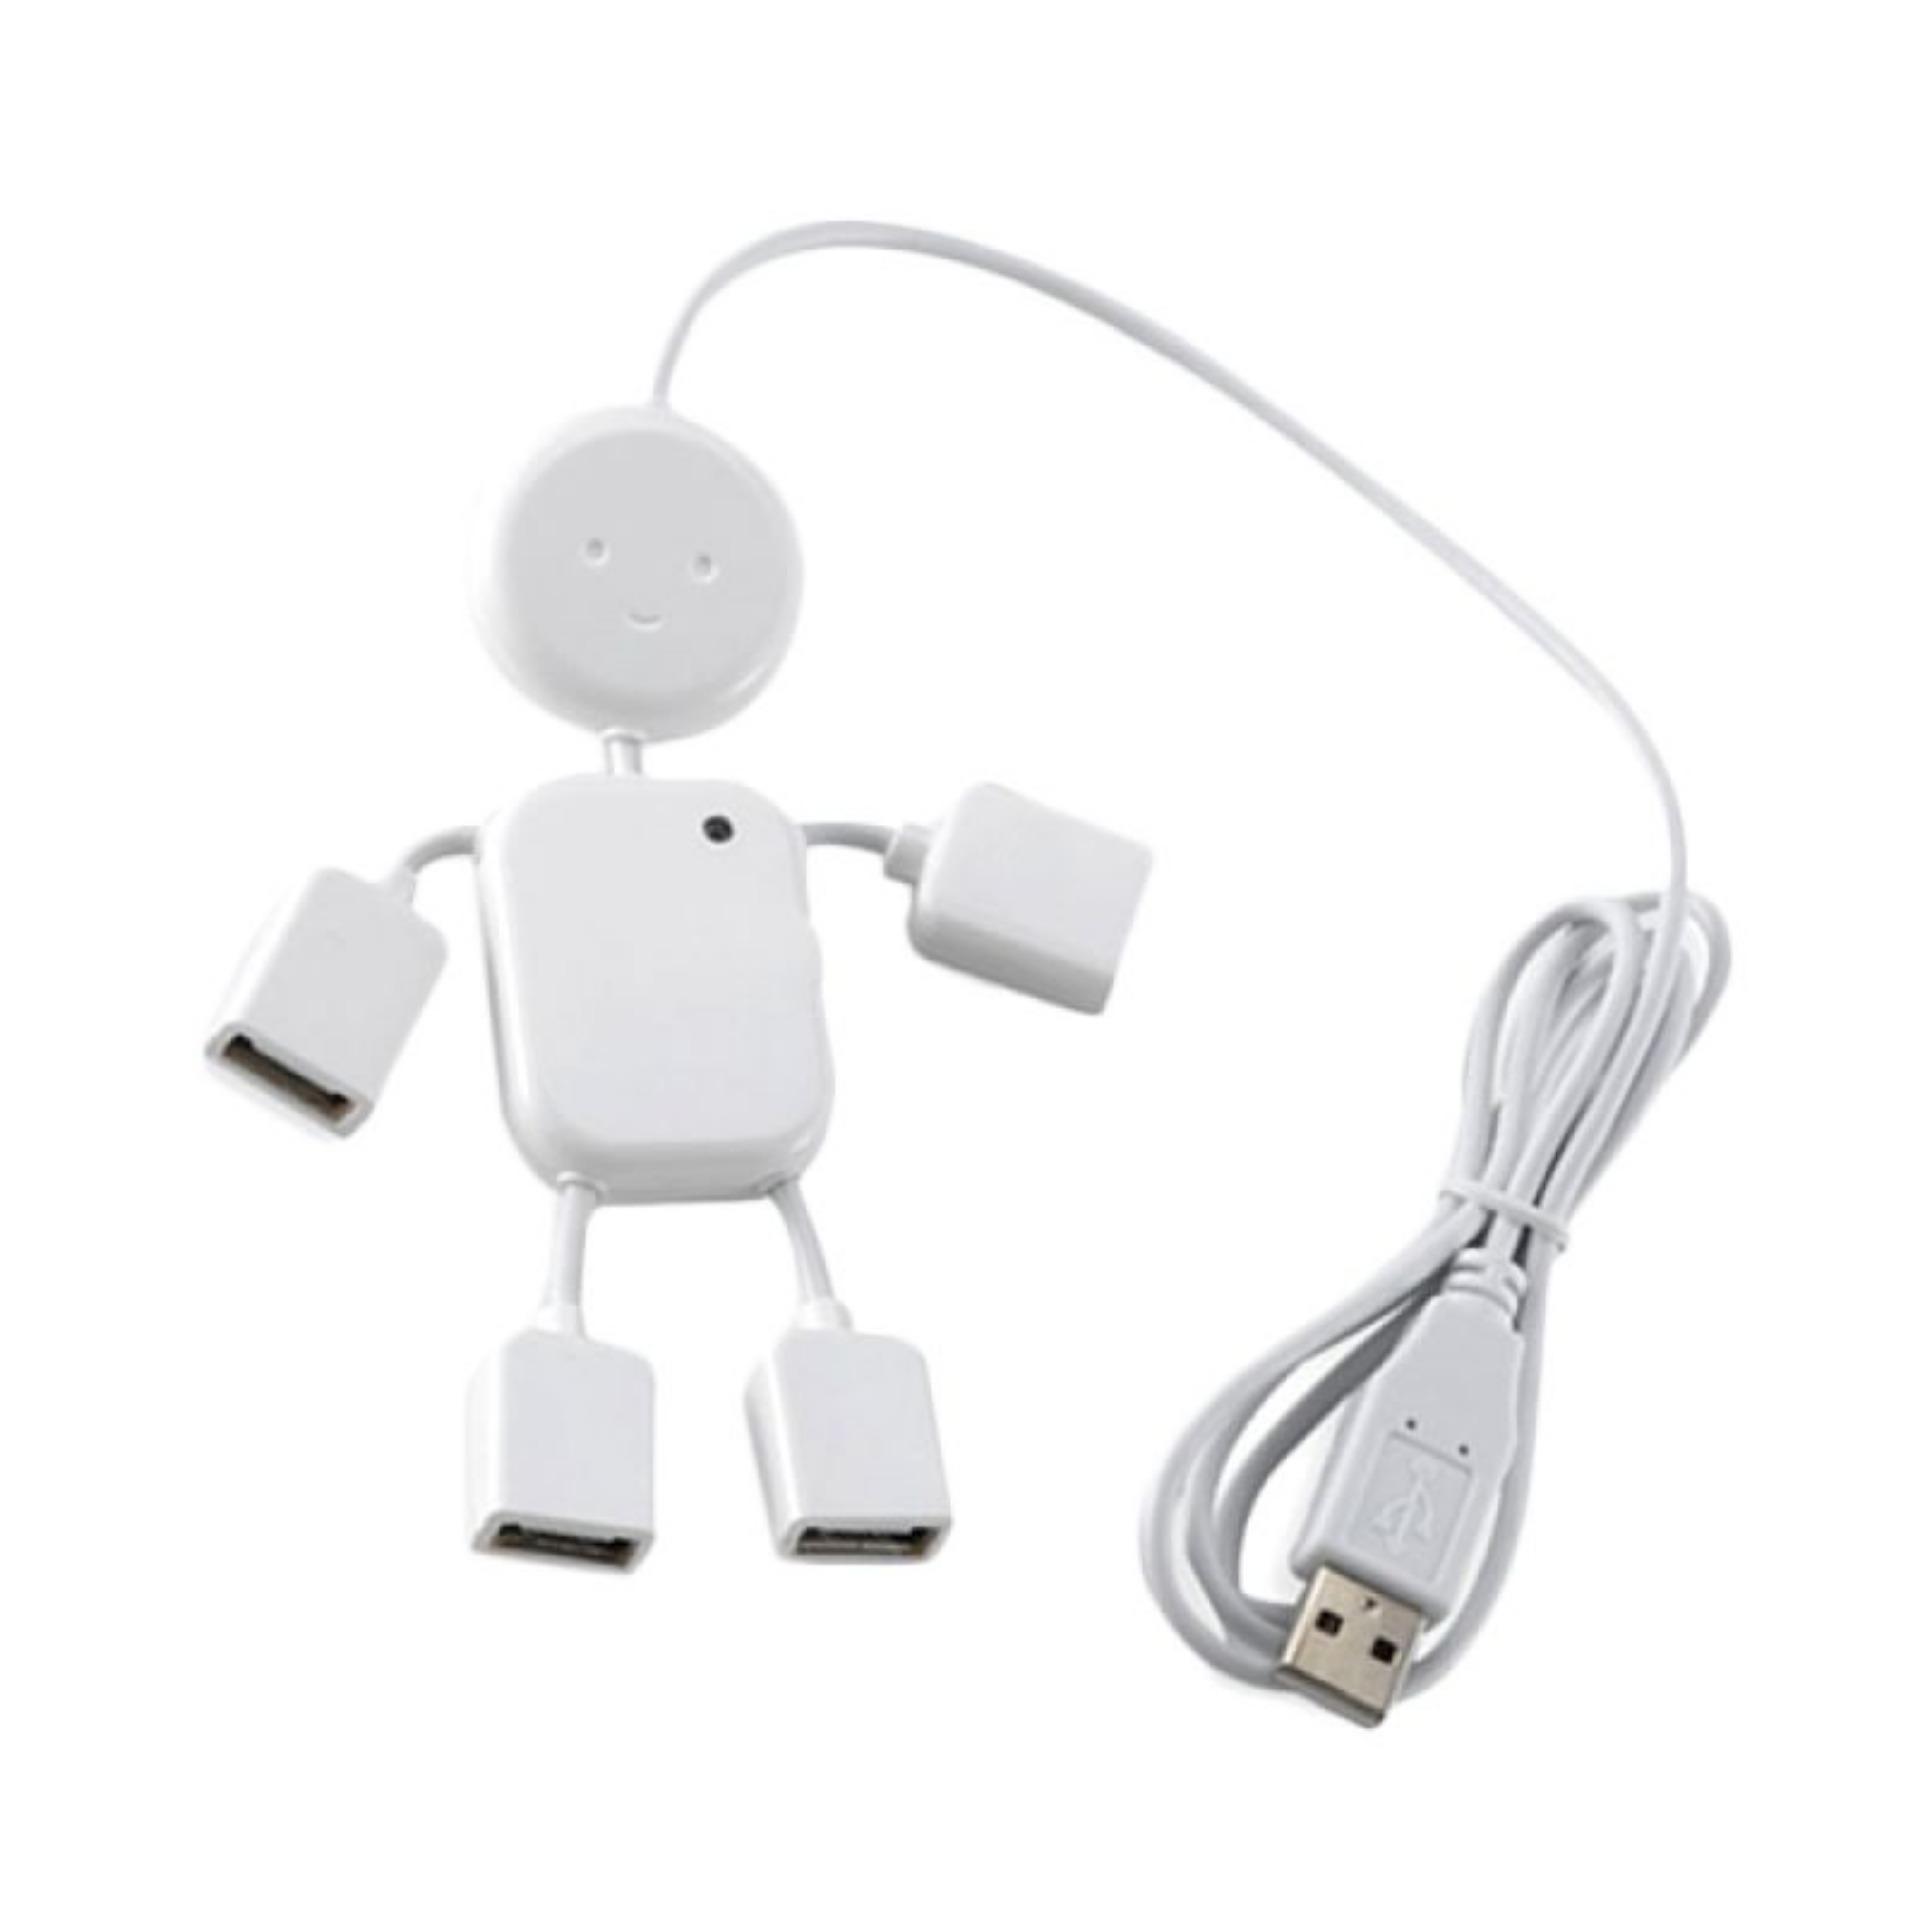 Hub chia USB thành 4 cổng hình robot